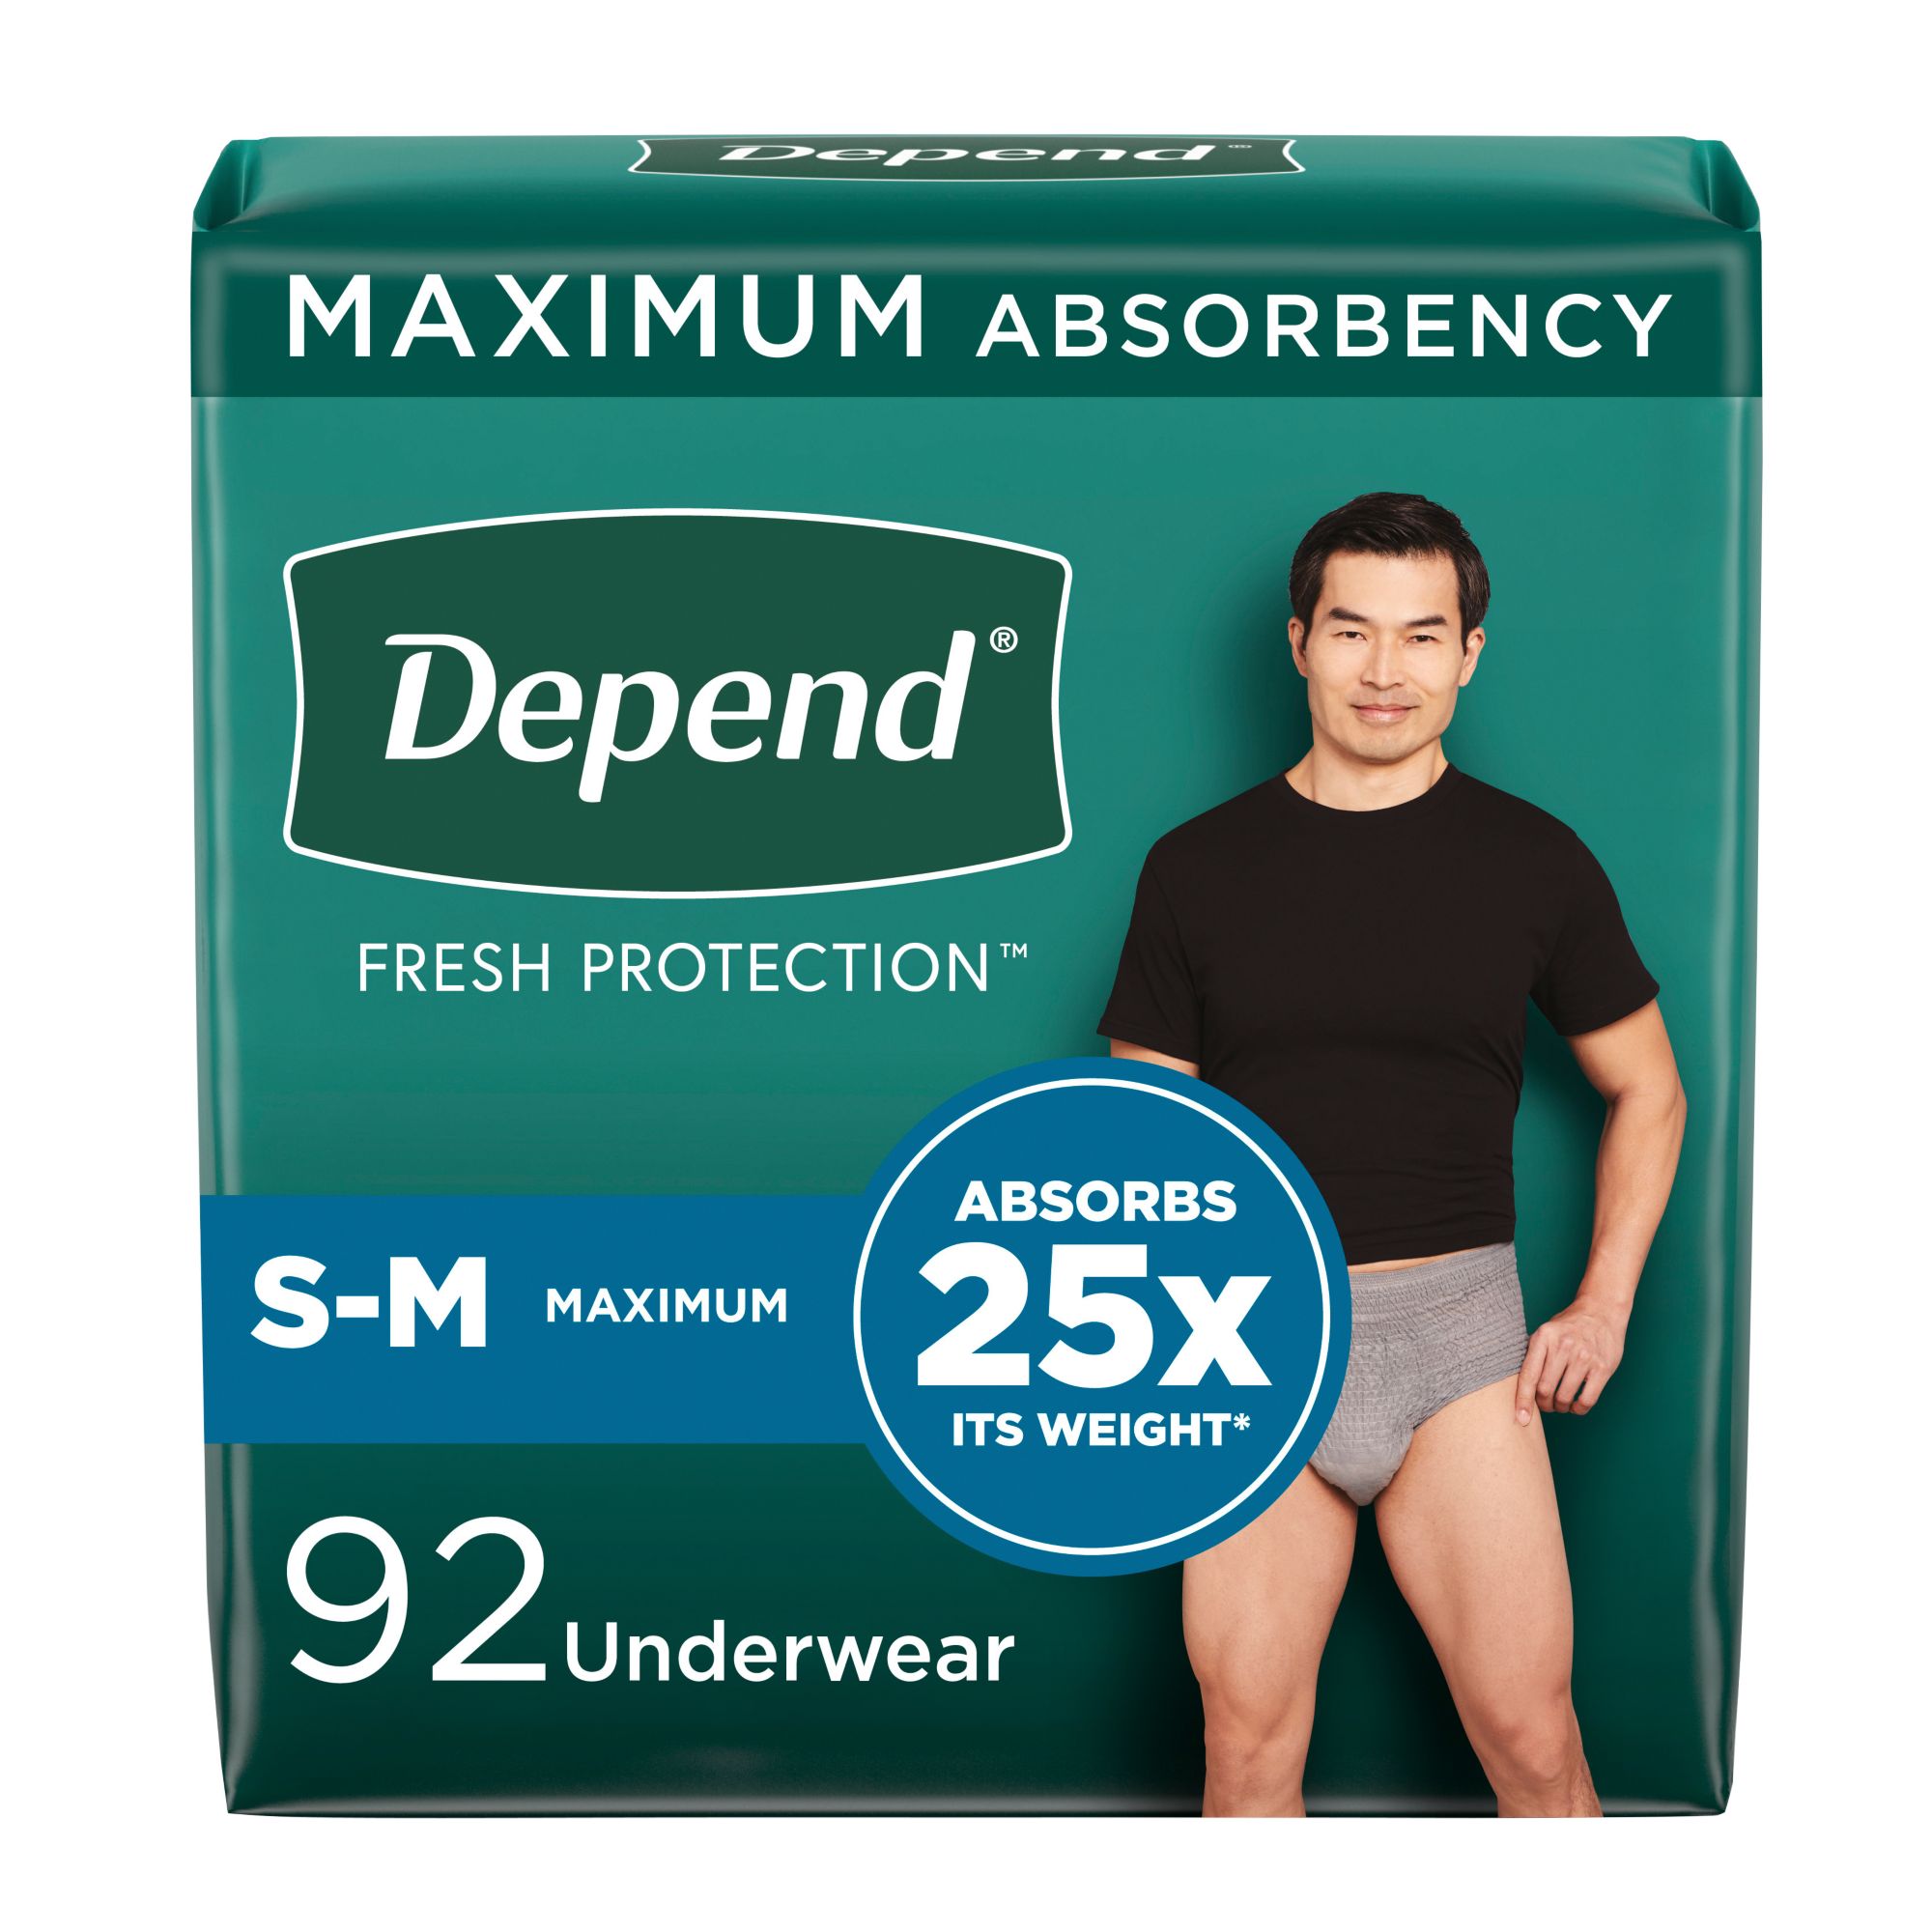 Super absorbent sports undies, Boy Short, Narrow Waist